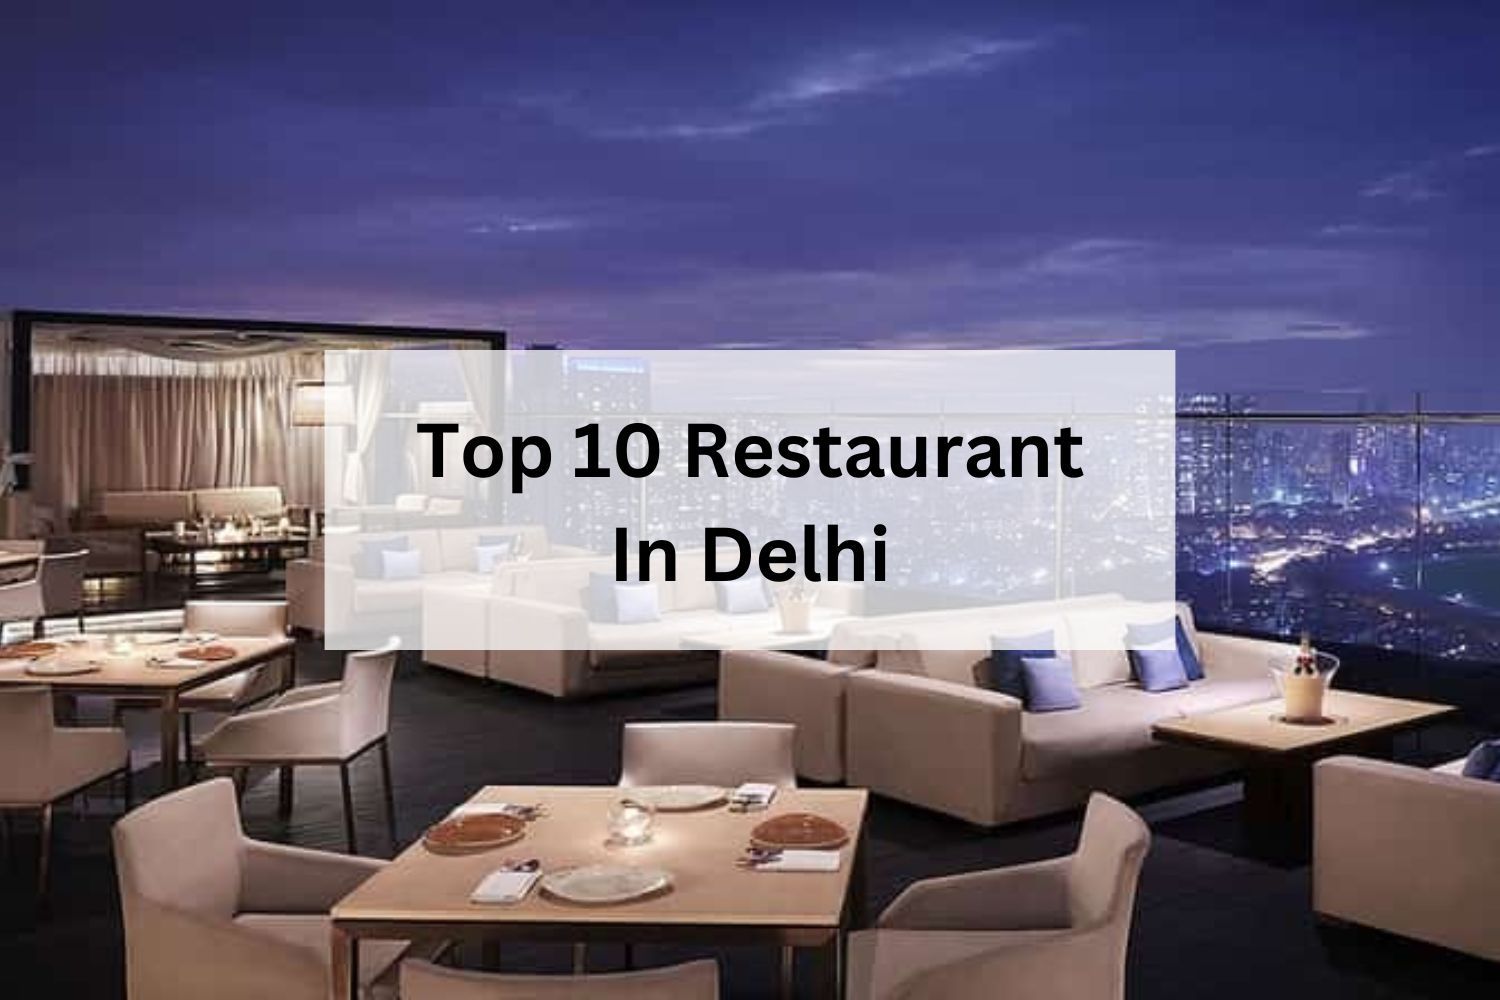 Top 10 Restaurant In Delhi